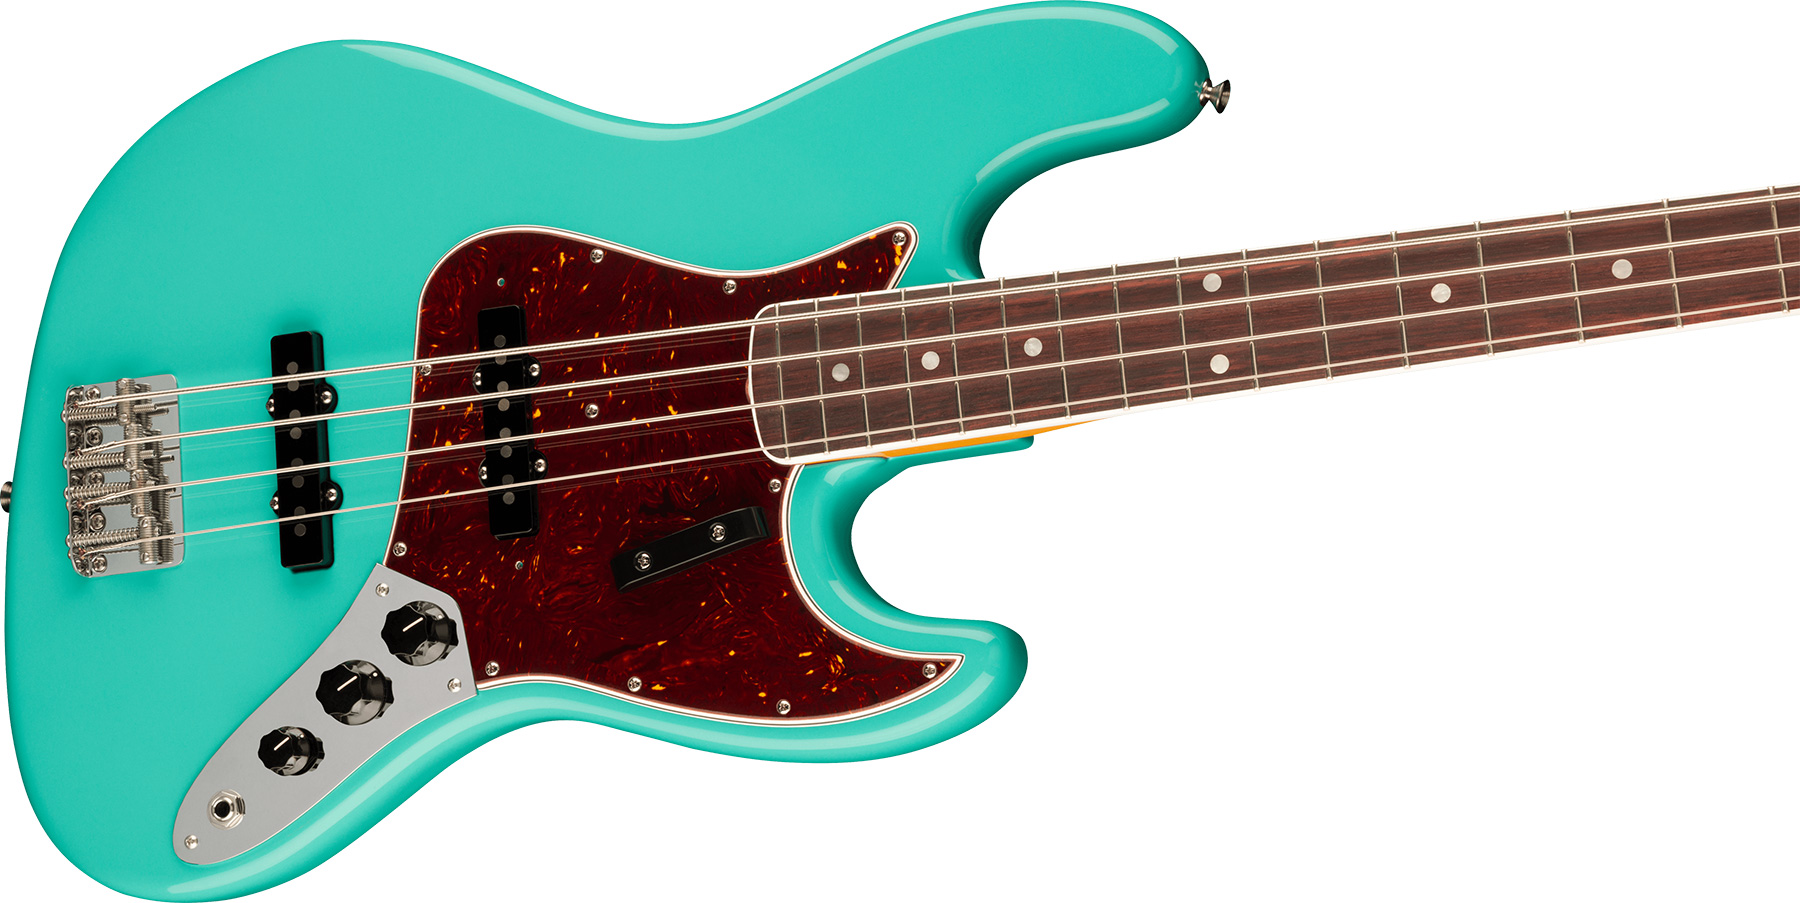 Fender Jazz Bass 1966 American Vintage Ii Usa Rw - Sea Foam Green - Bajo eléctrico de cuerpo sólido - Variation 2